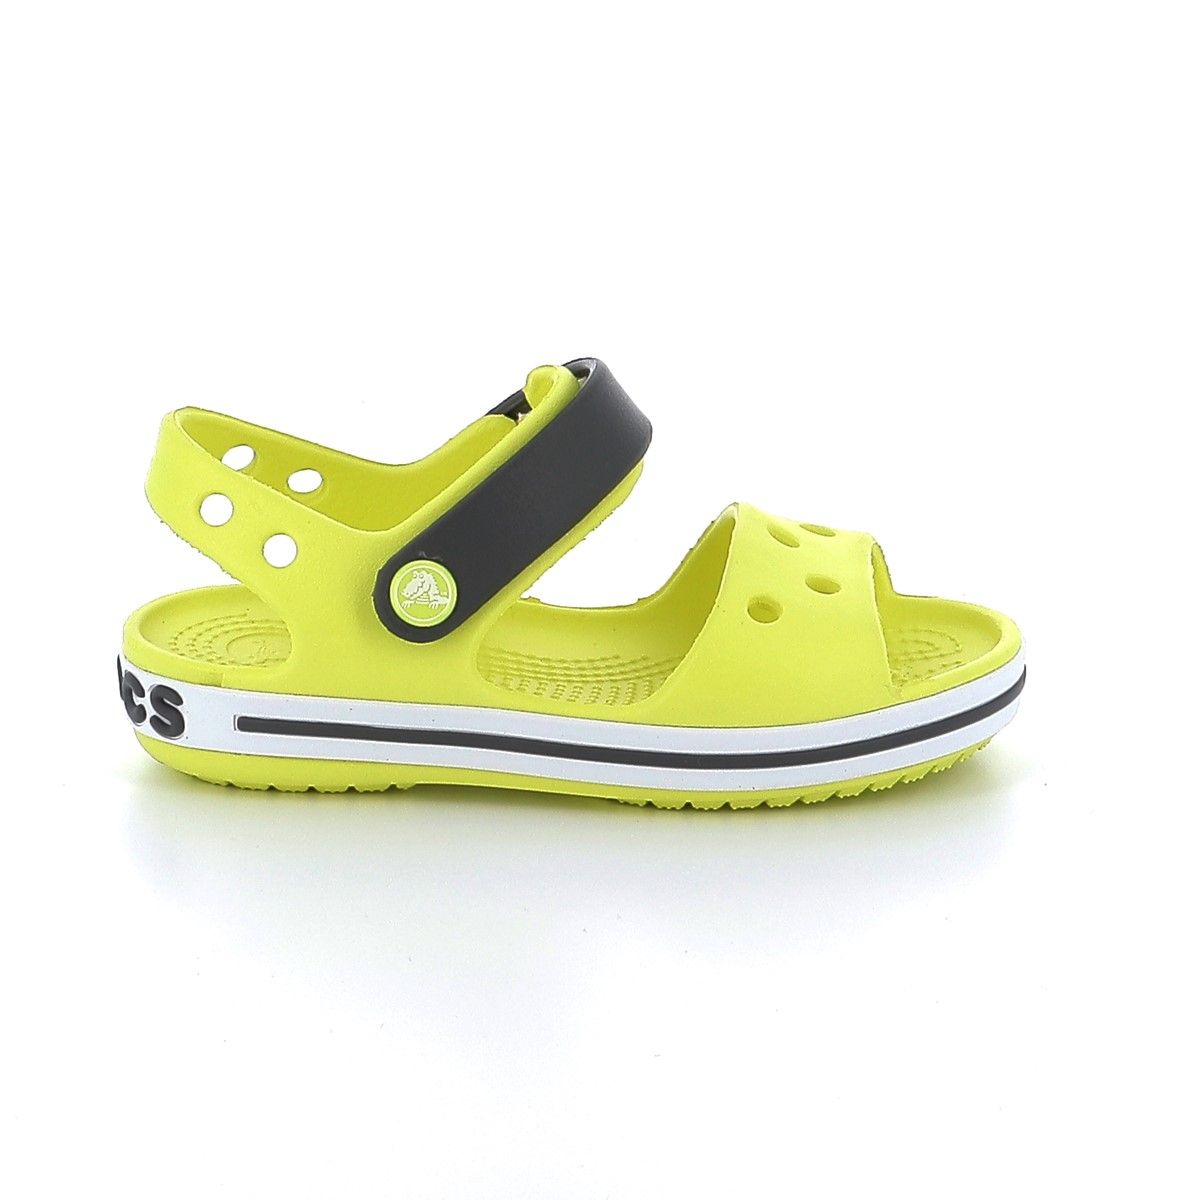 Παιδικό Πέδιλο για Αγόρι Crocs Crocband Sandal Kids Χρώματος Κίτρινο 12856-725